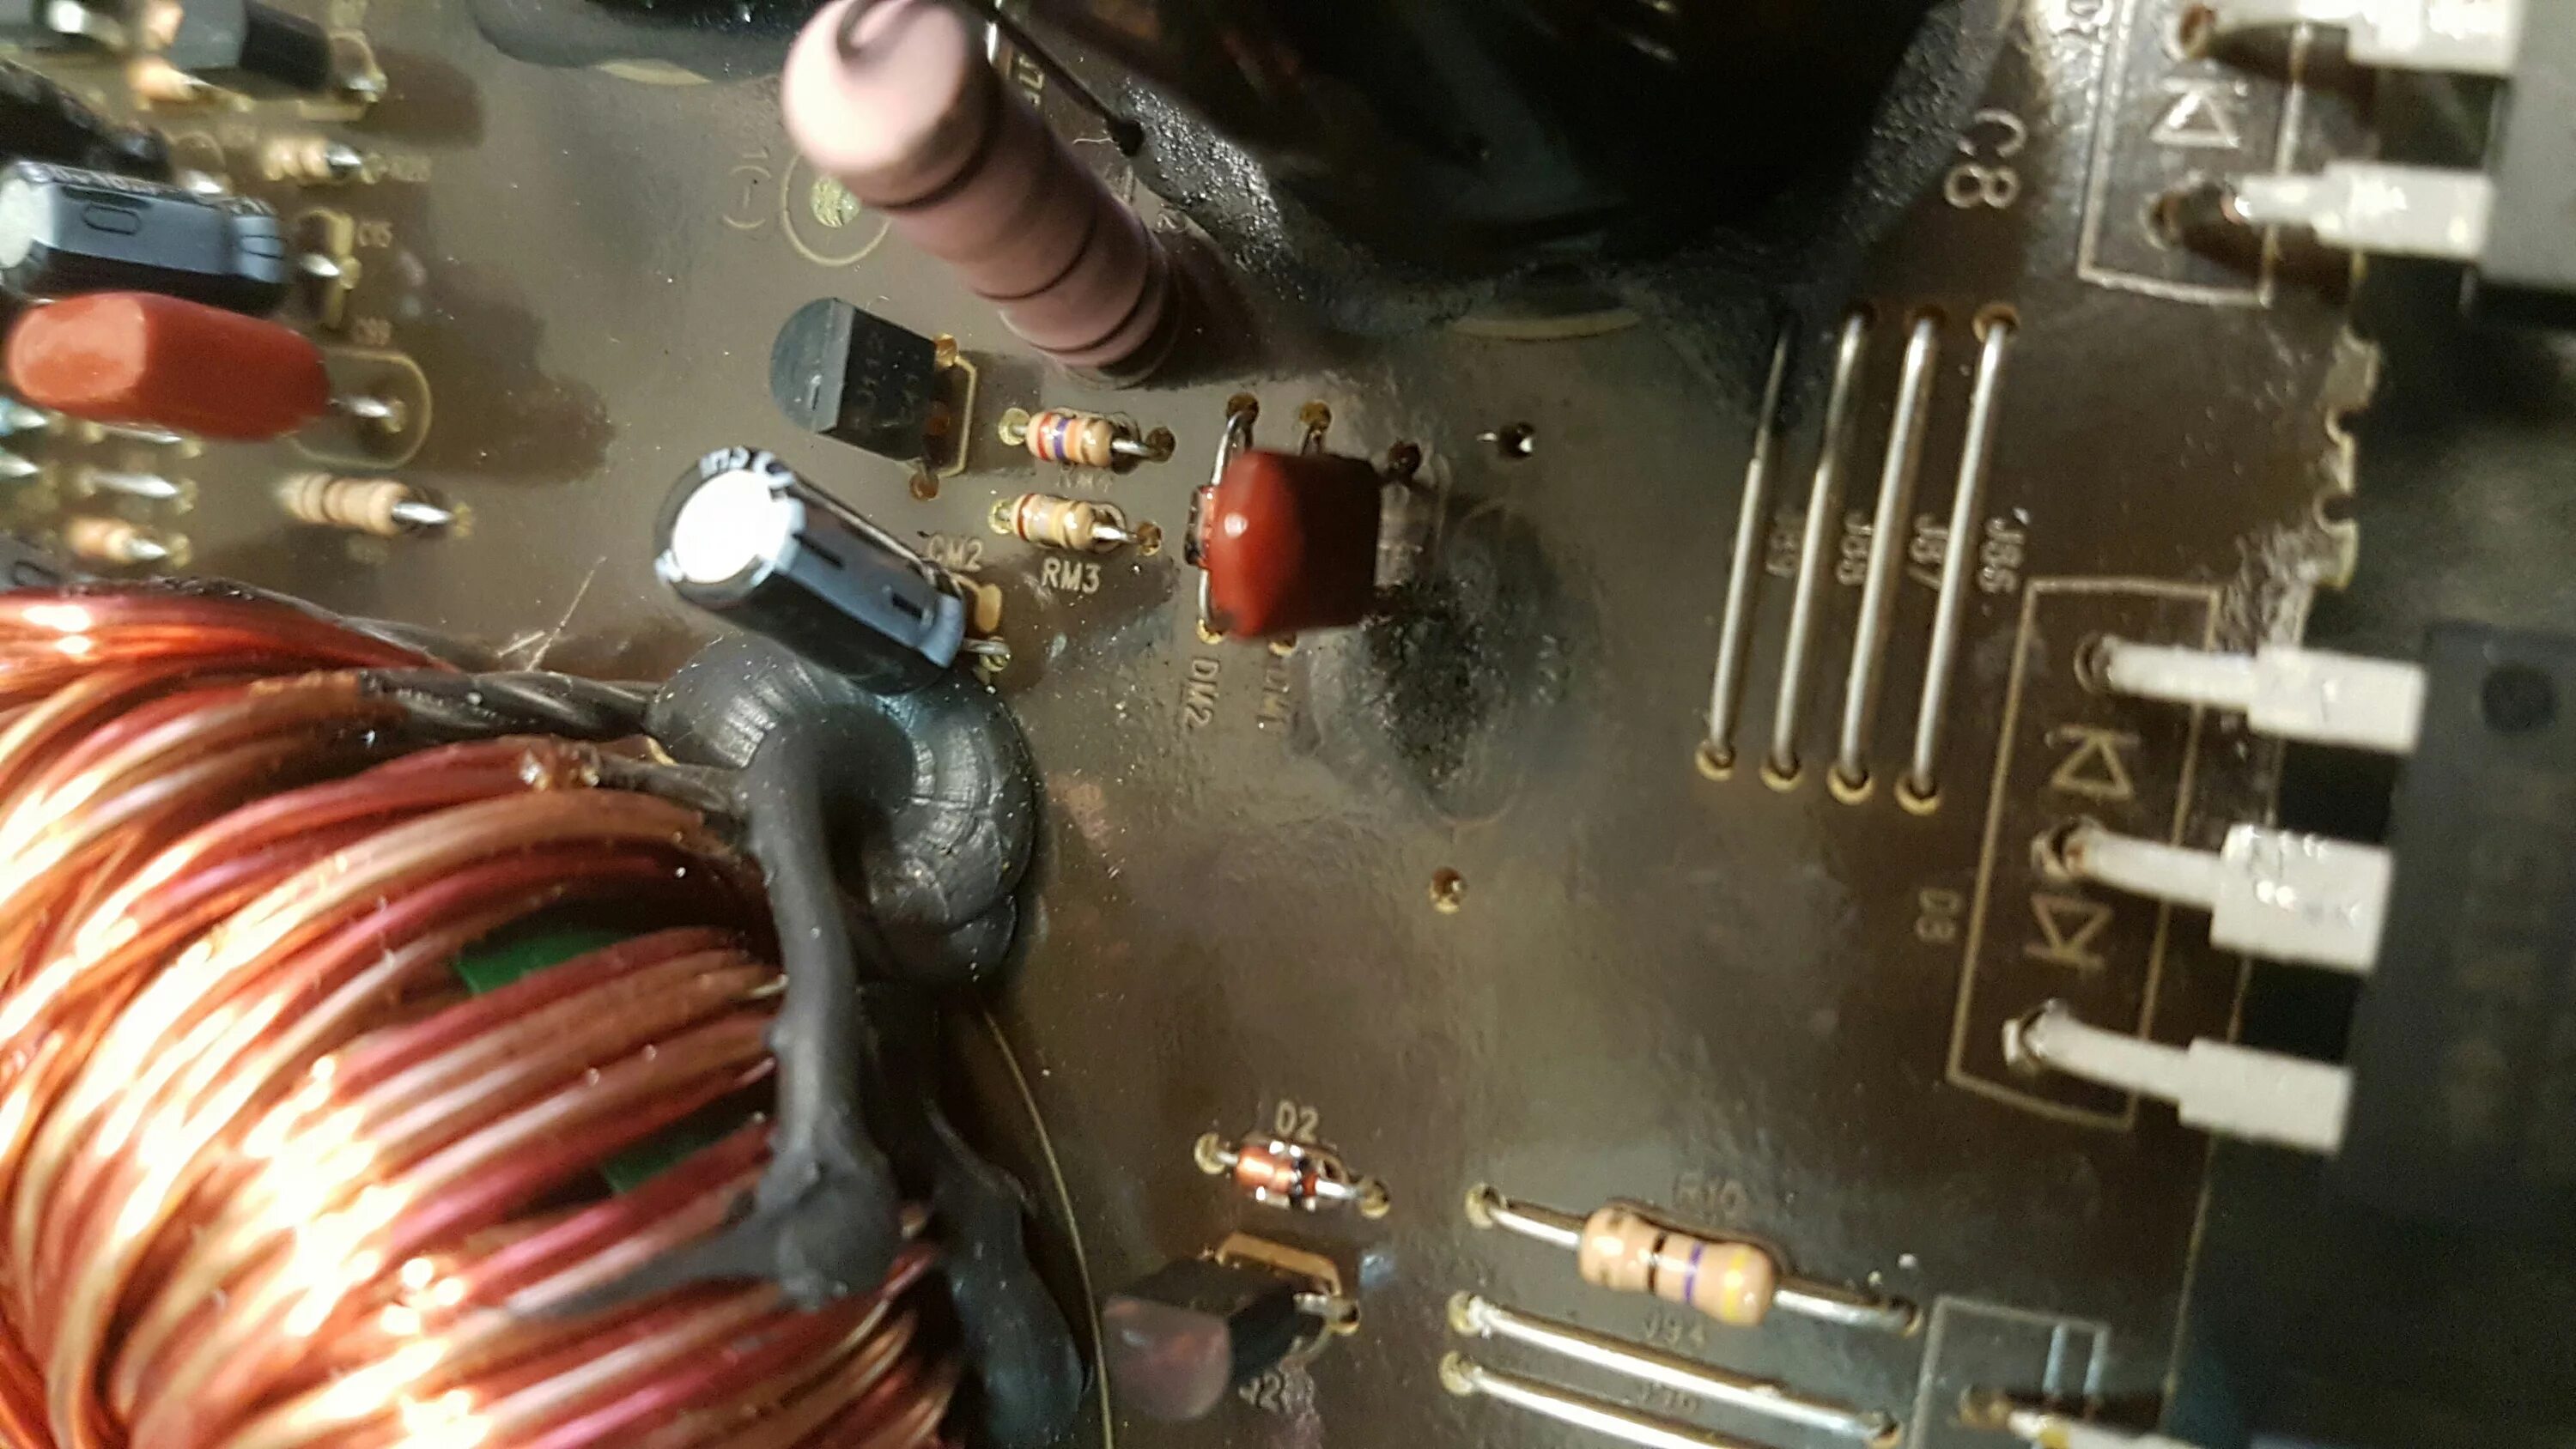 Сгорело сопротивление. Резистор се027 сгорел. Kicx RTS 4.100 r168 220 радиодетали. Резистор для усилителя. Неисправный резистор.